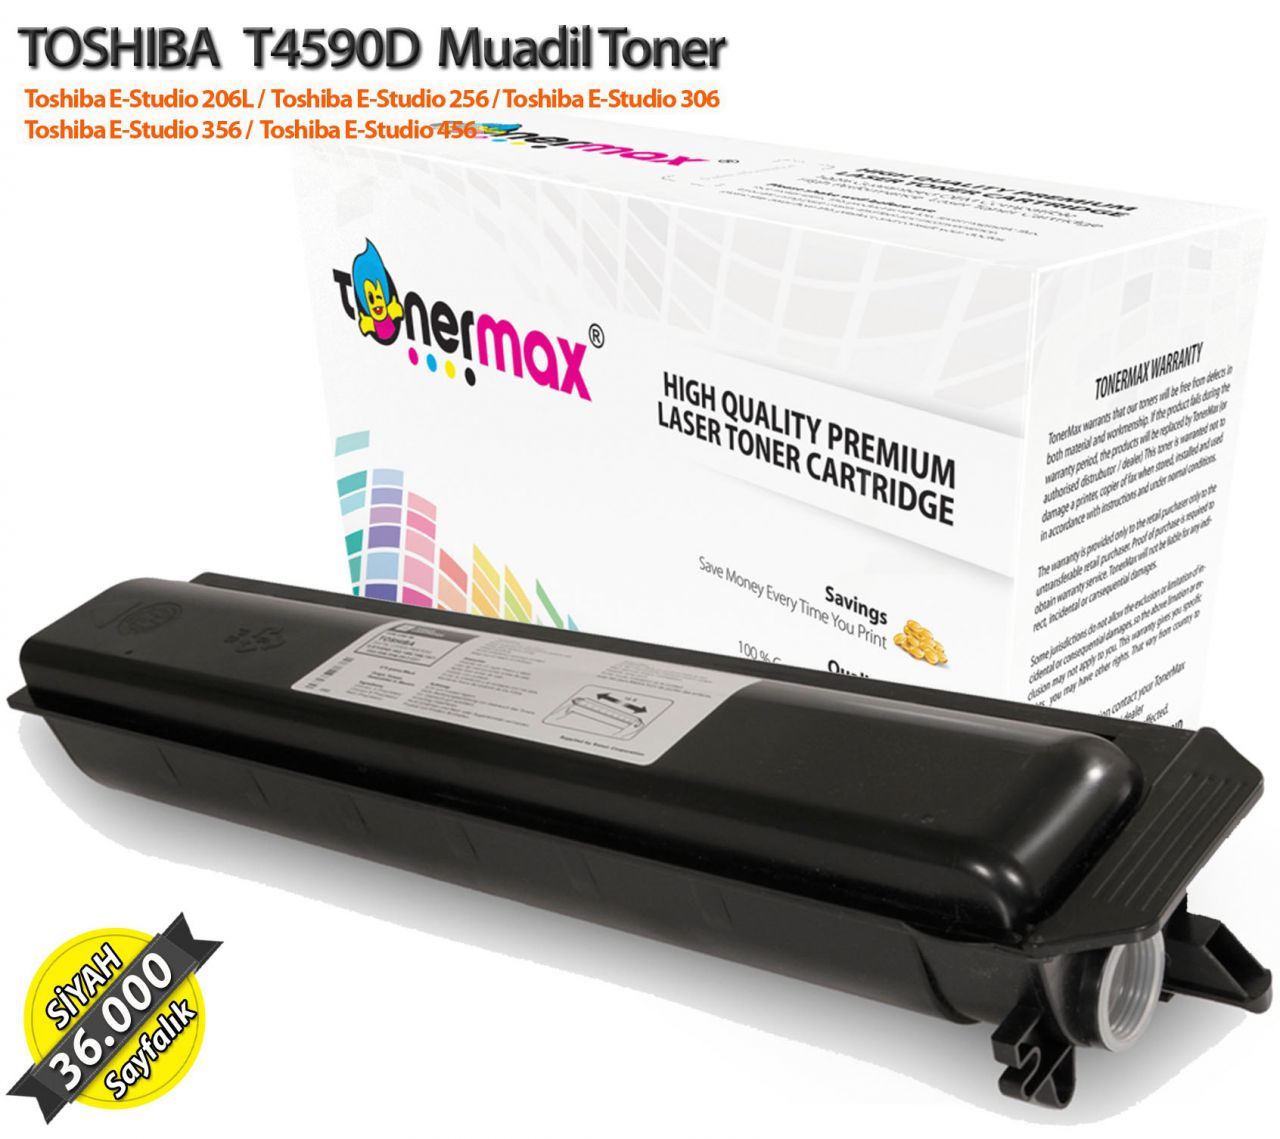 Toshiba T4590D / Estudio 206L / 256 / 306 / 356 / 456 Muadil Toner